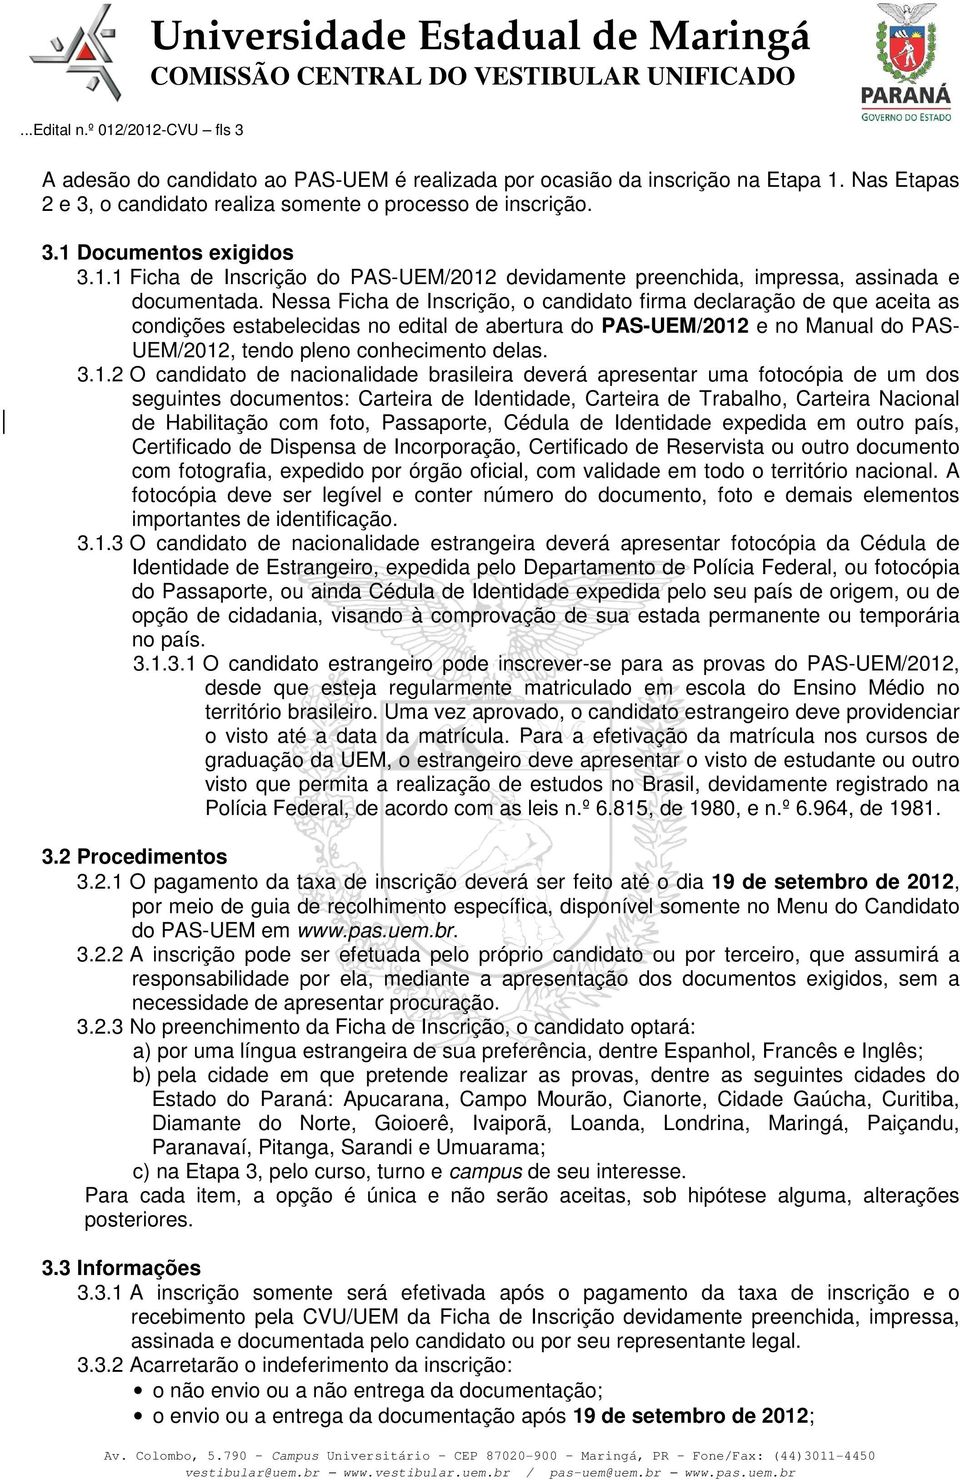 Nessa Ficha de Inscrição, o candidato firma declaração de que aceita as condições estabelecidas no edital de abertura do PAS-UEM/2012